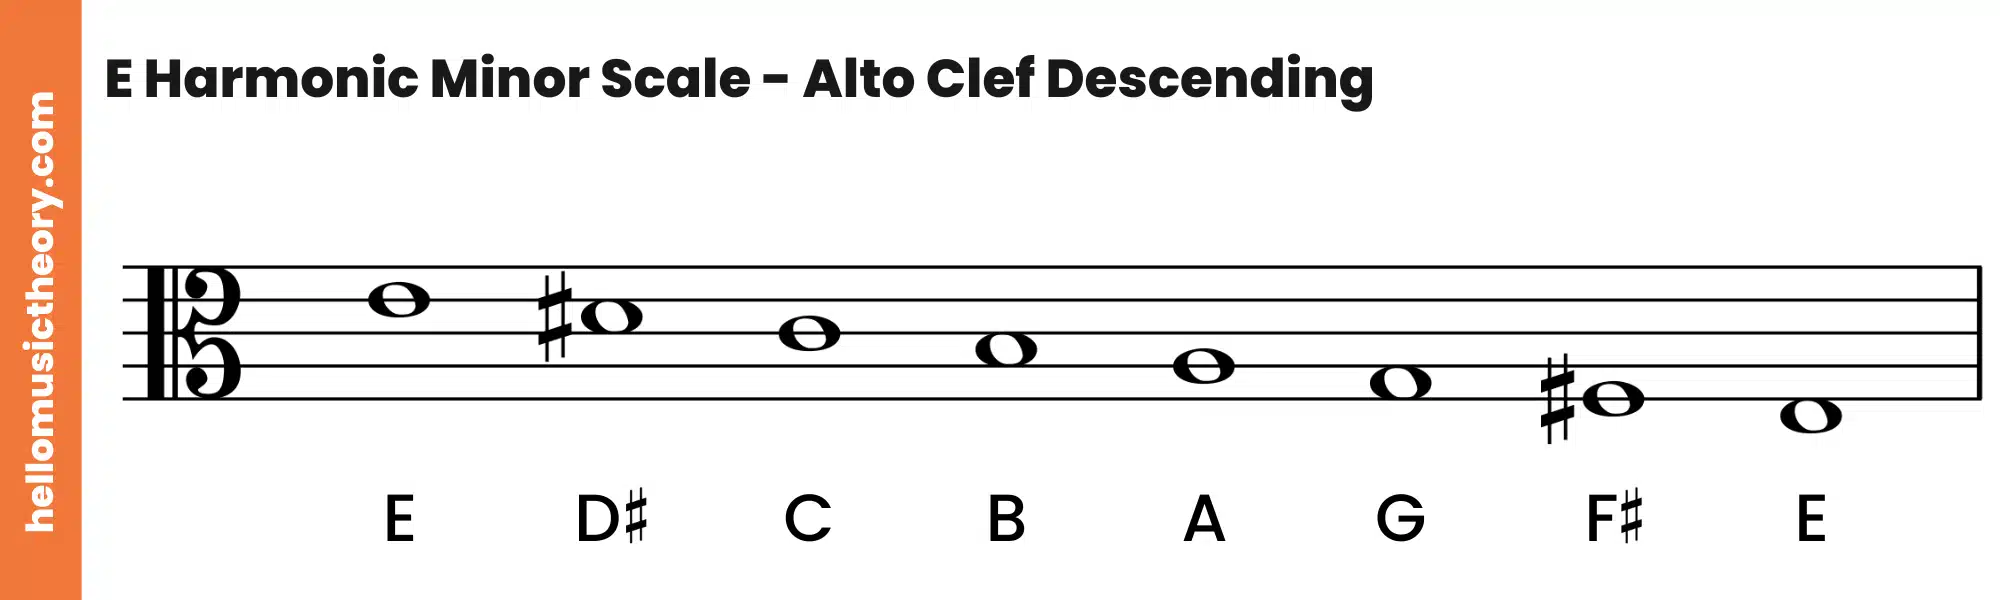 E Harmonic Minor Scale Alto Clef Descending